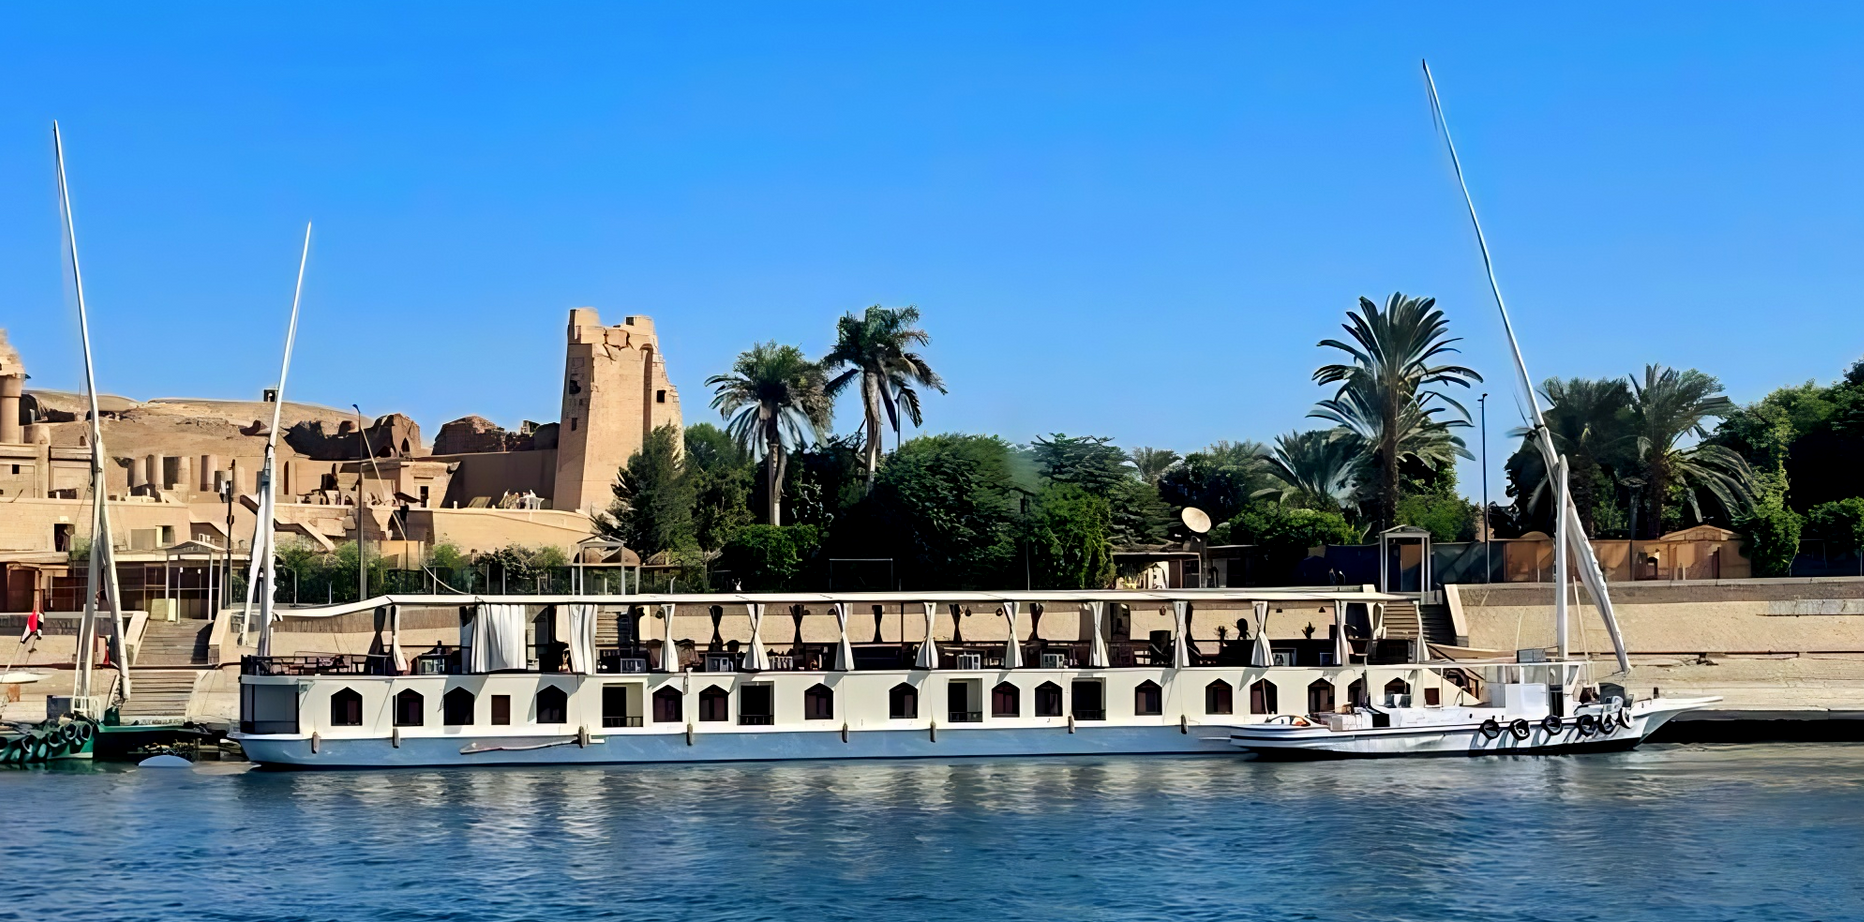 Dahabiya on the Nile, Nile cruise deluxe, private Nile cruise, Dahabiya Egypte, organized Trip Egypt, Travel agency Egypt, Visit Egypt, Dahabiyat, Dahabiya Luxor, Dahabiya Aswan, 